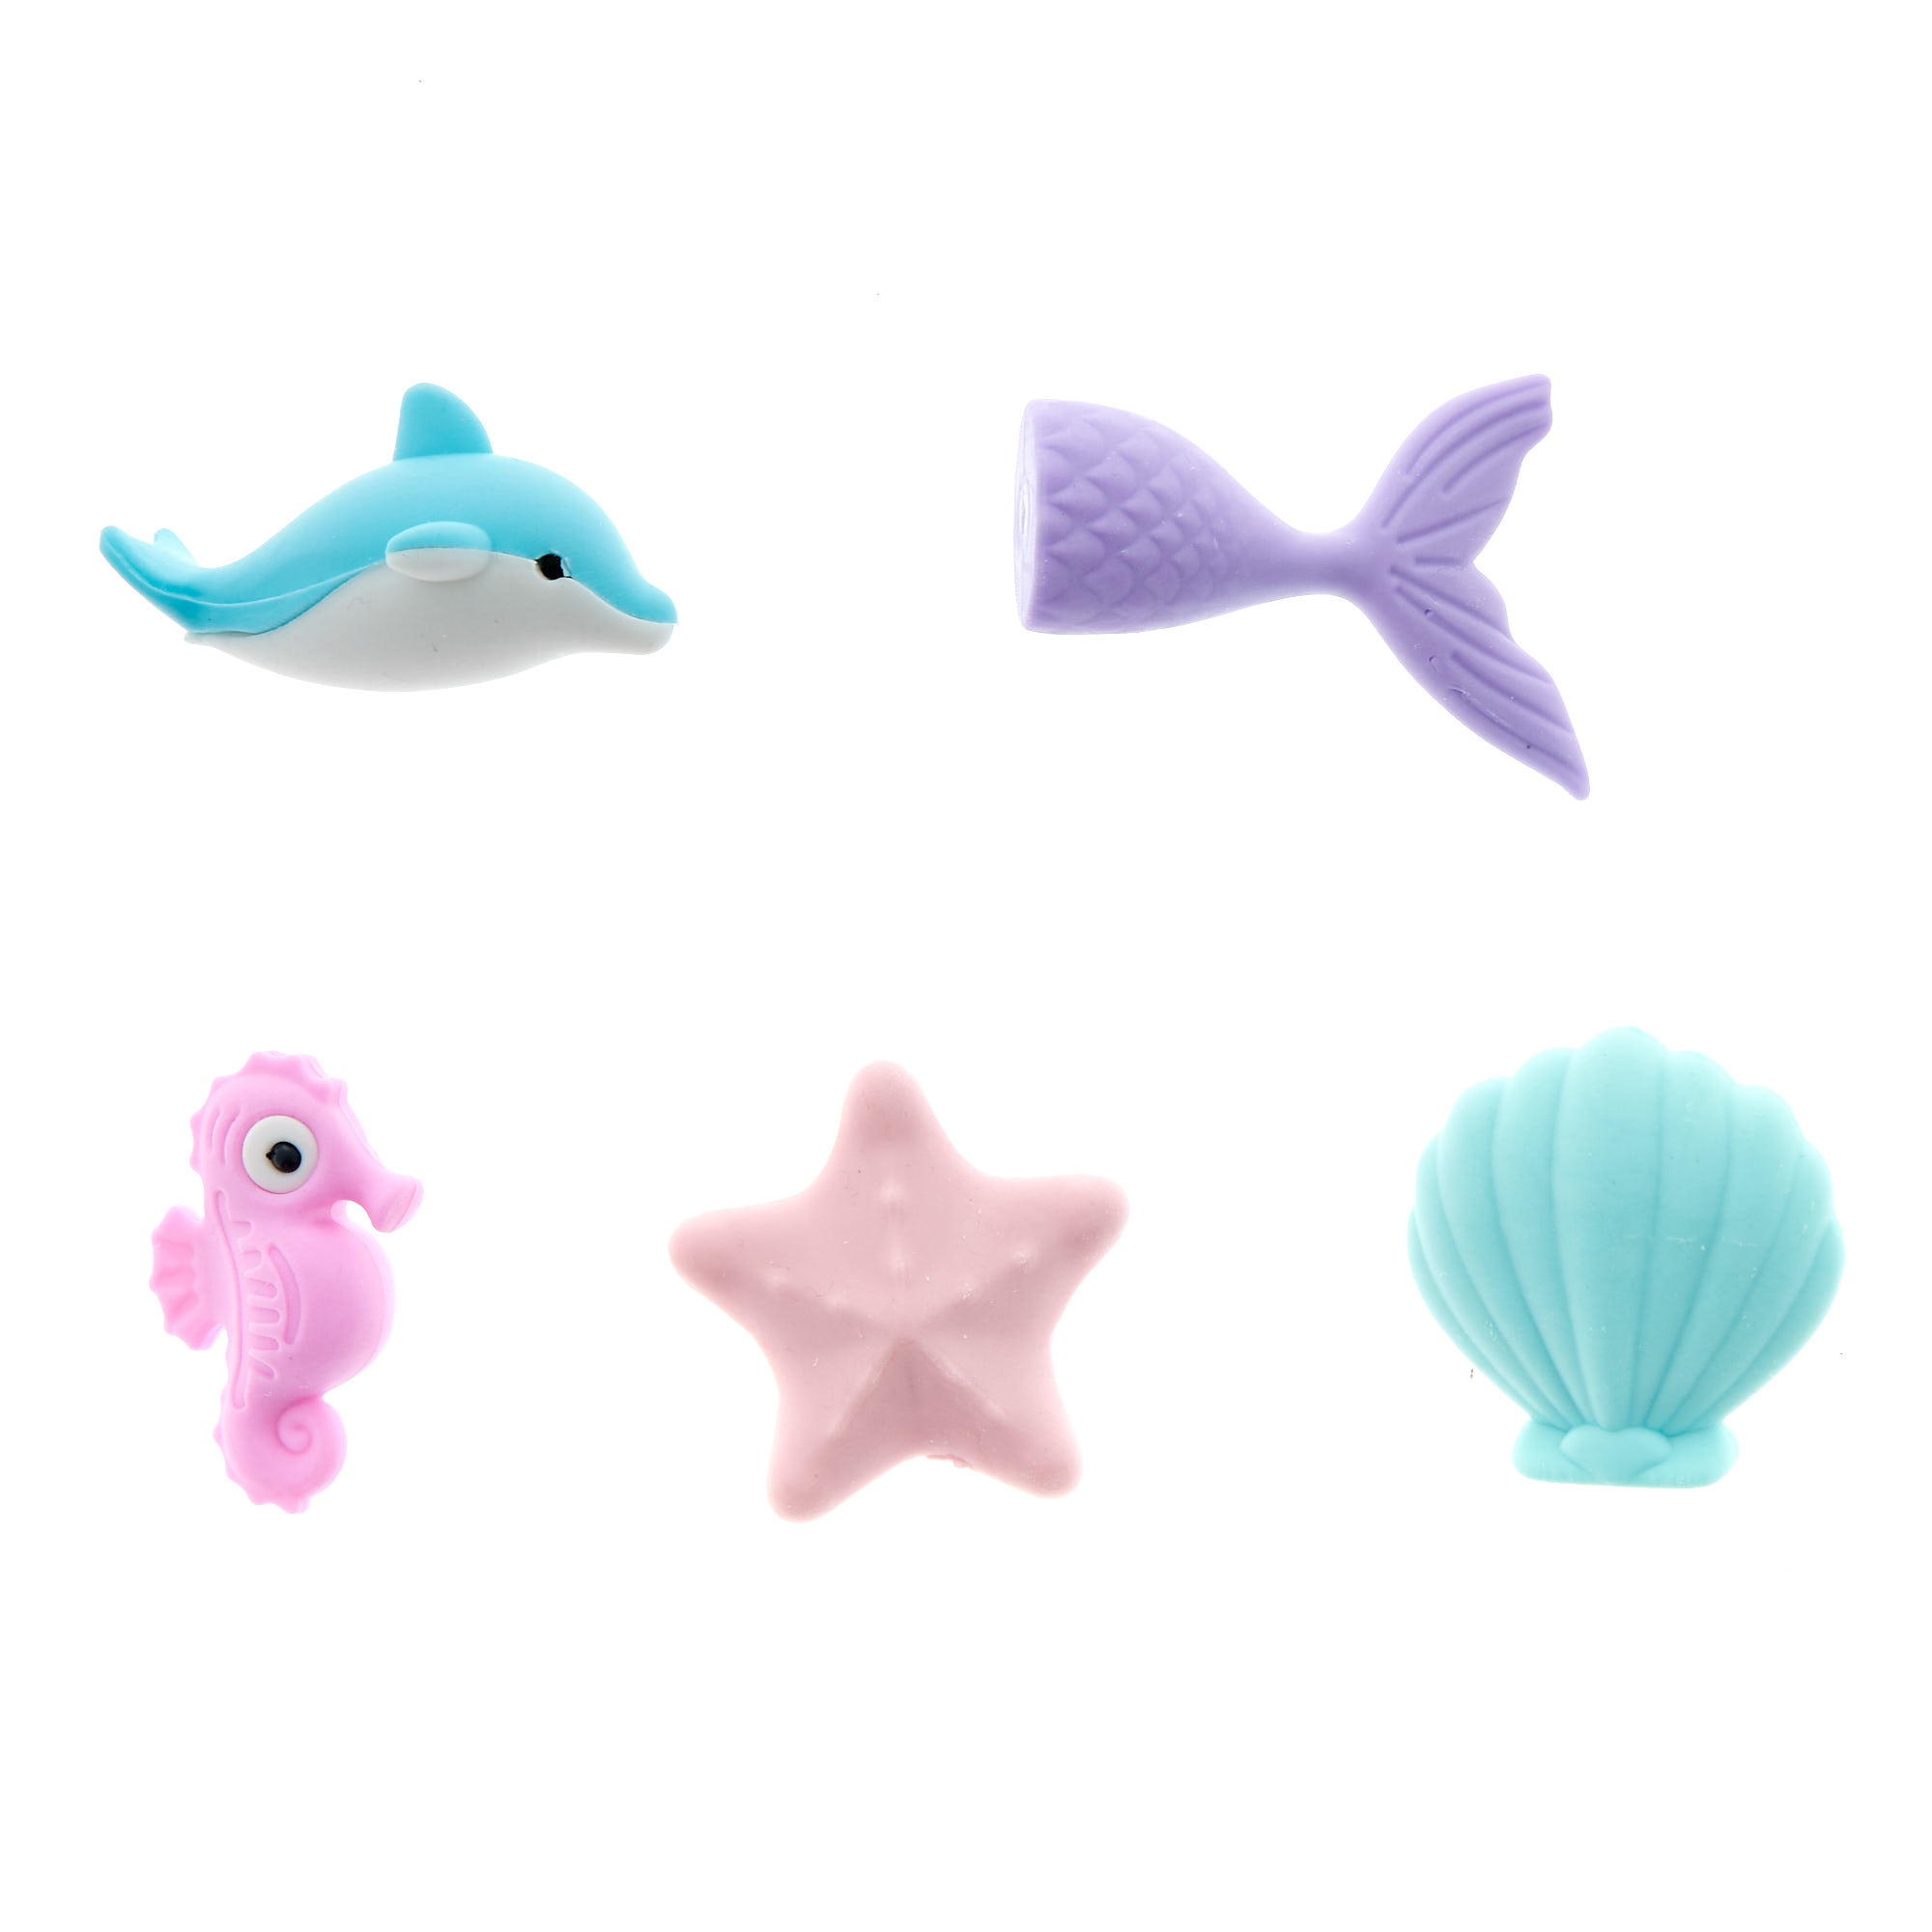 Mermaid Erasers - Pack of 5